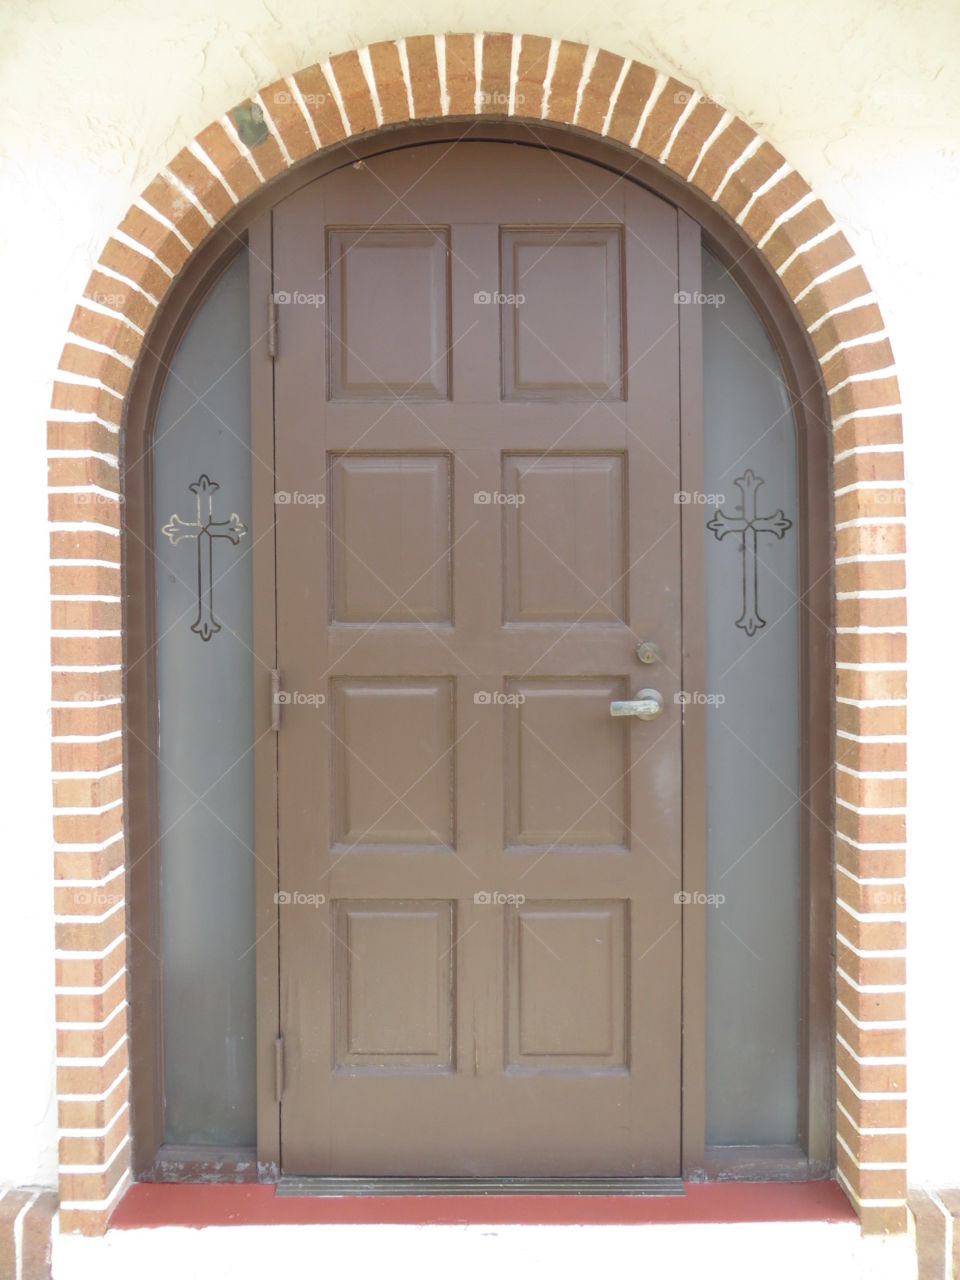 Church doors 